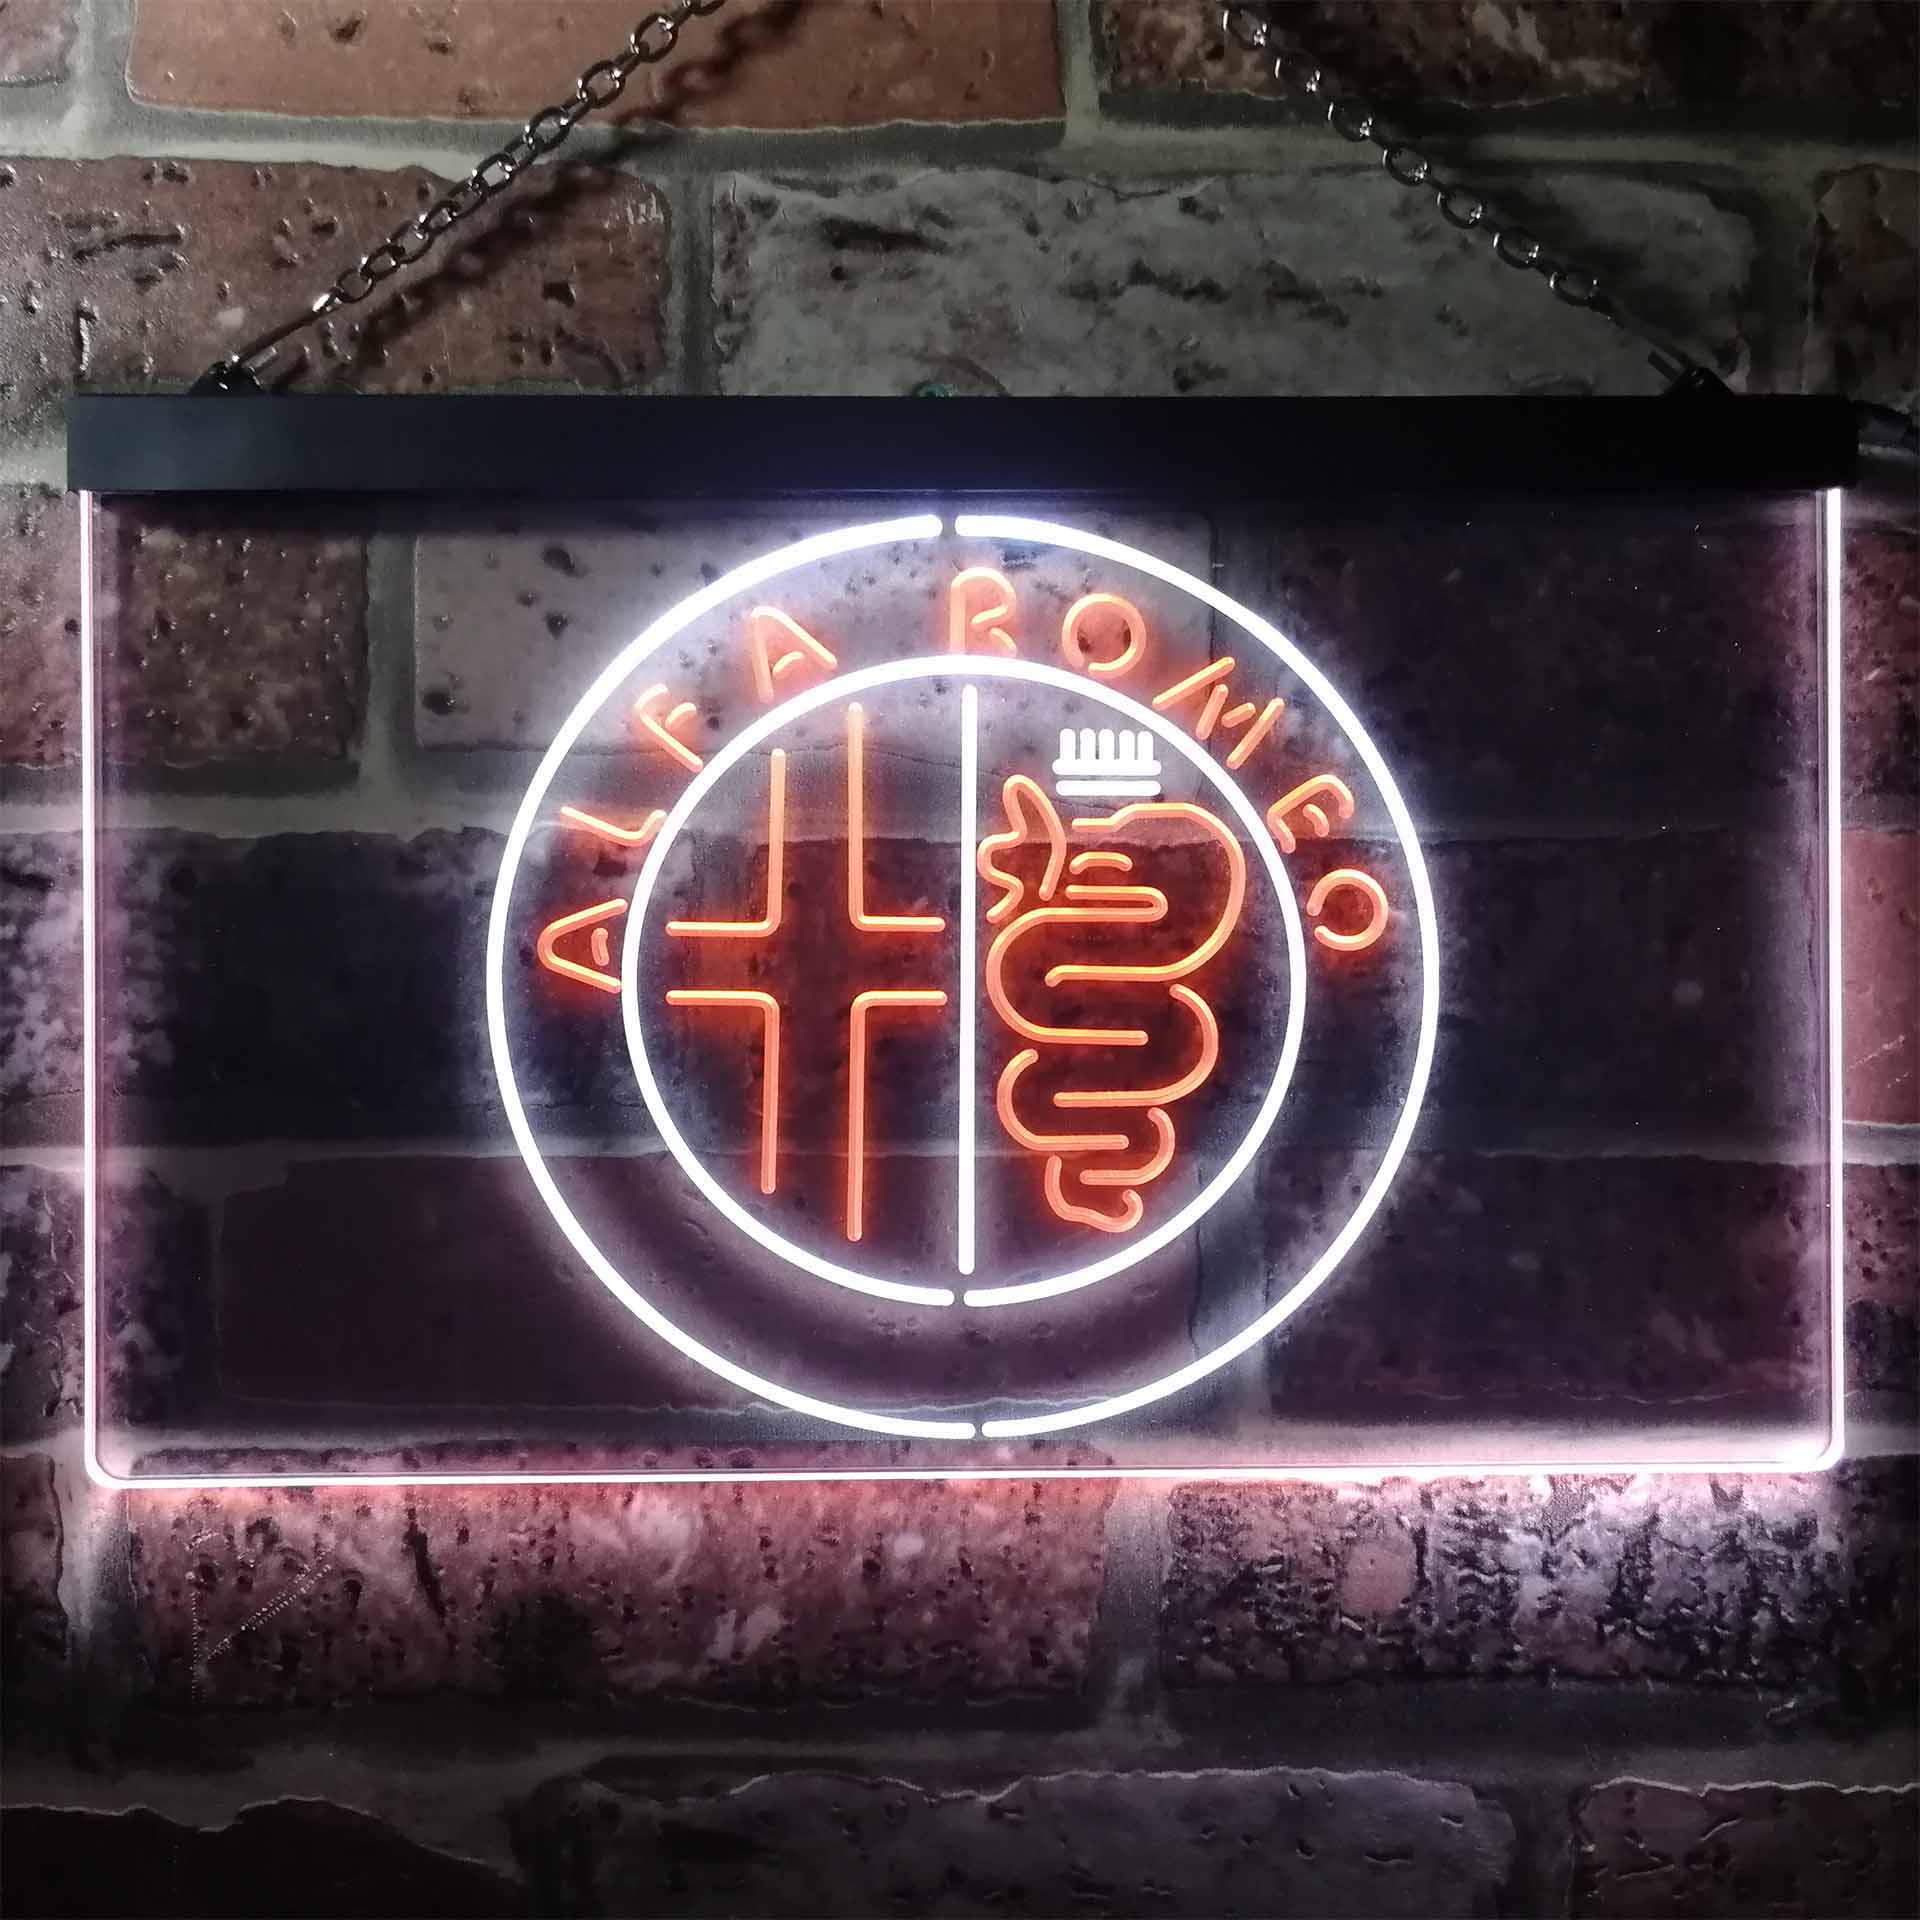 Alfa Romeo Car Garage Bar LED Neon Sign